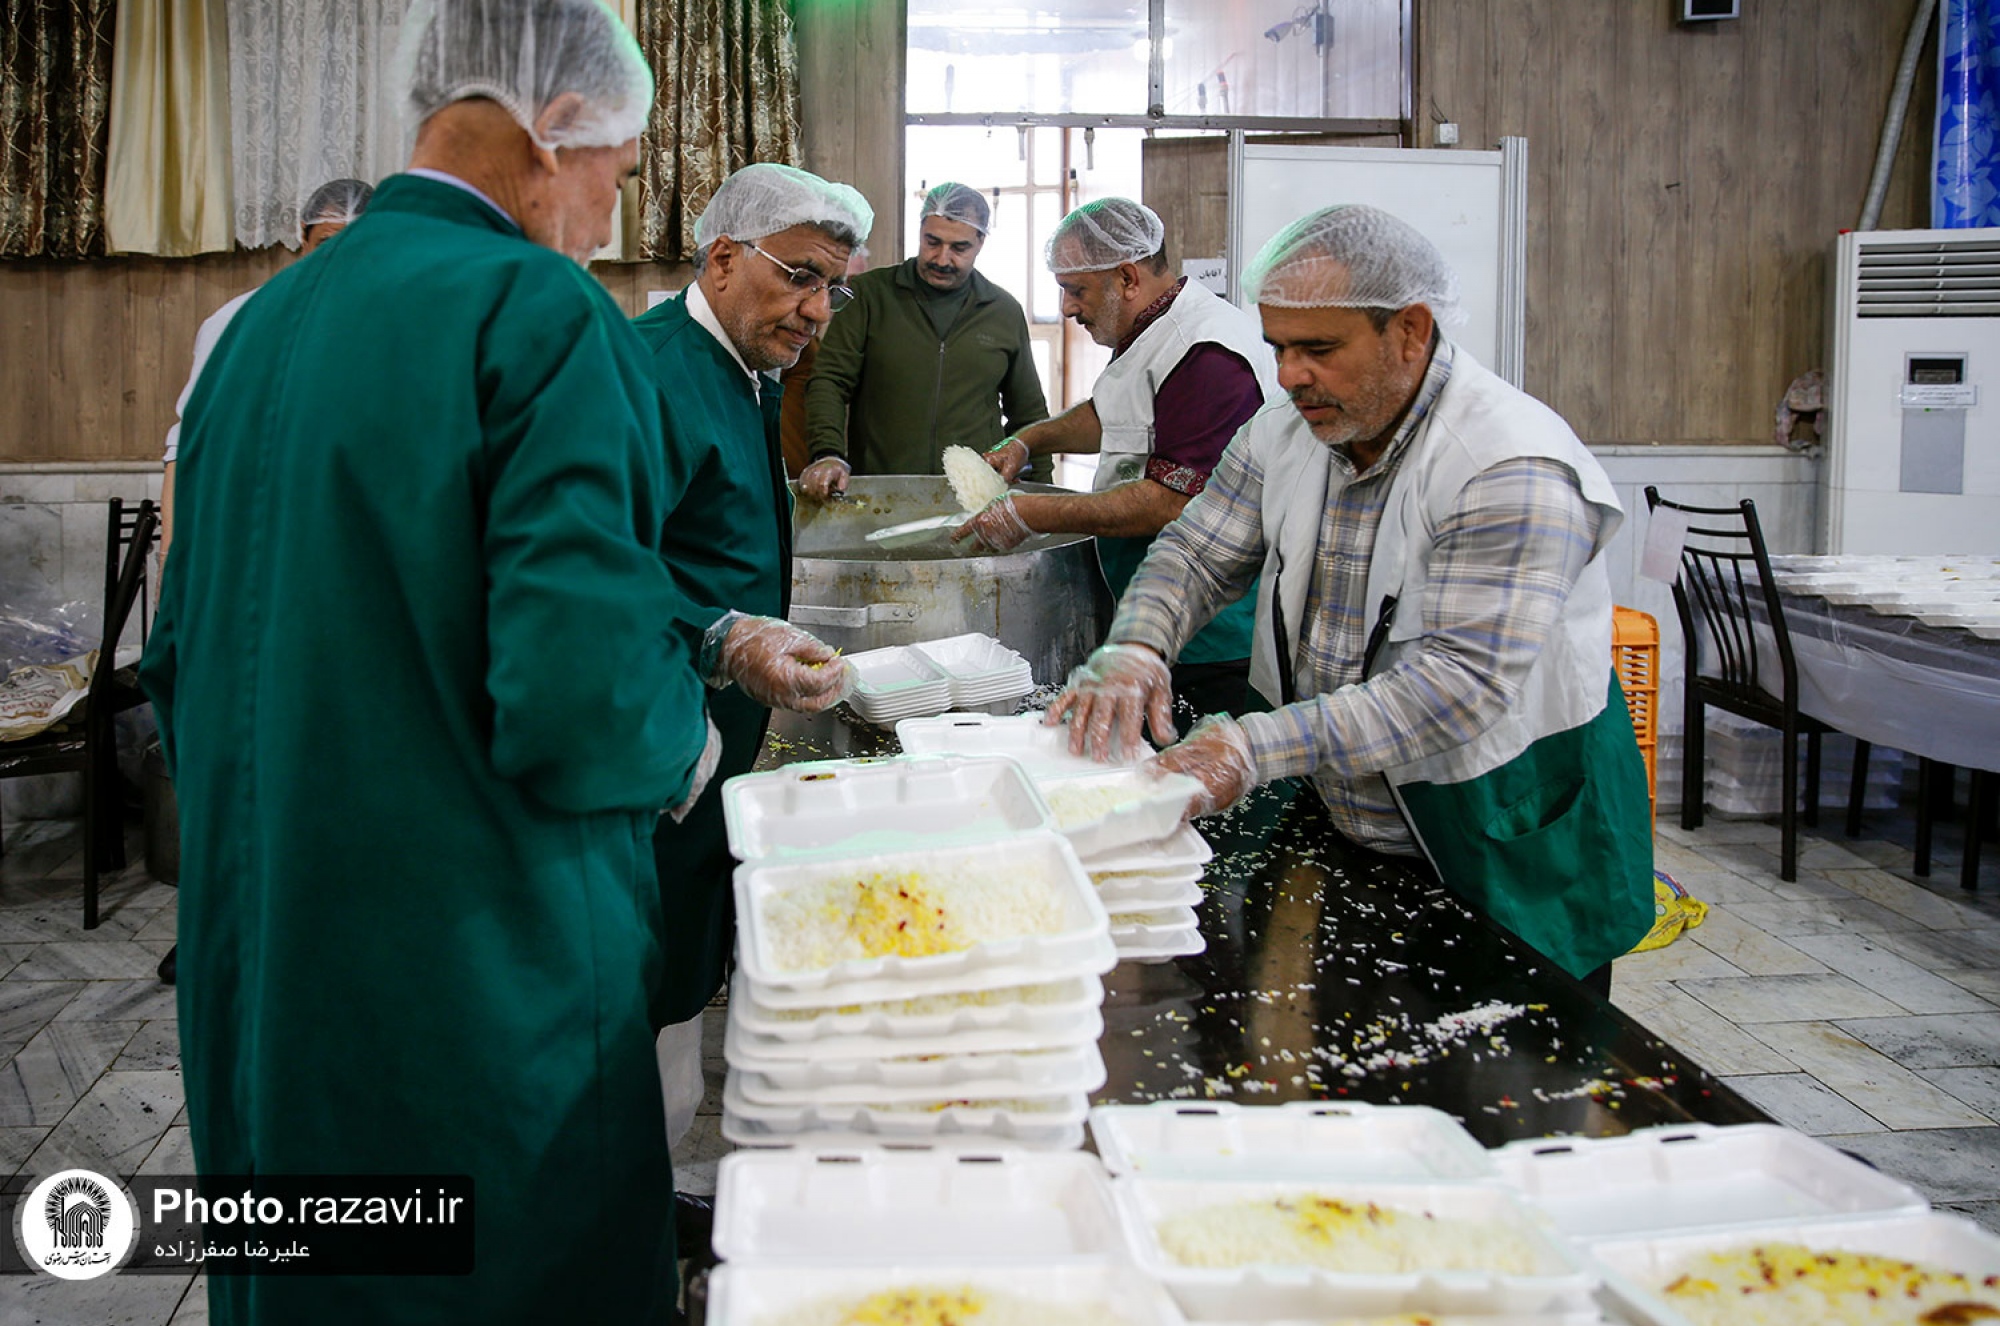 توزیع 10 هزار غذای متبرک حضرت در حاشیه شهر مشهد